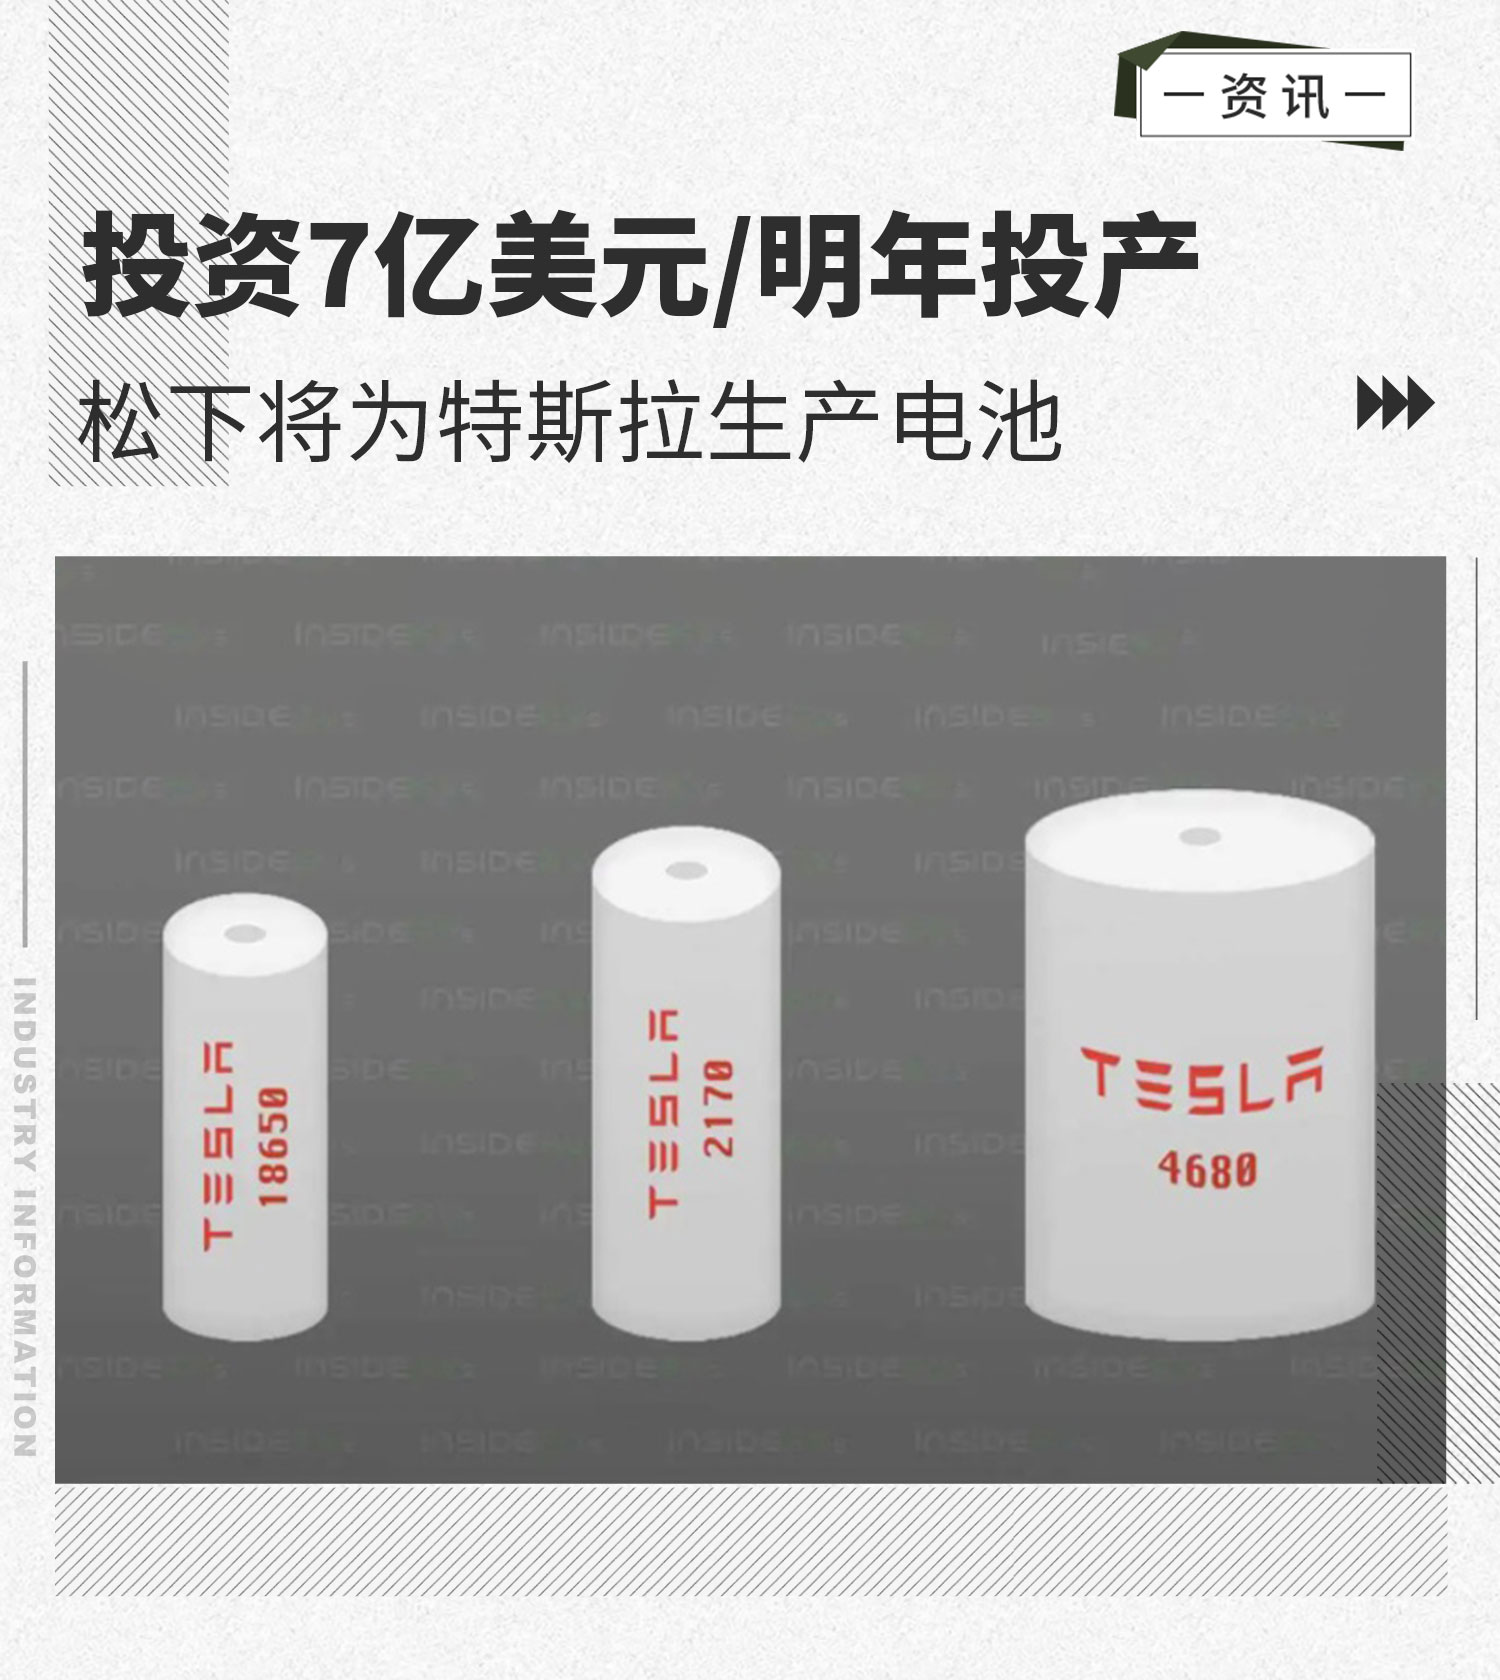 投资7亿美元/明年投产 松下将为特斯拉生产电池